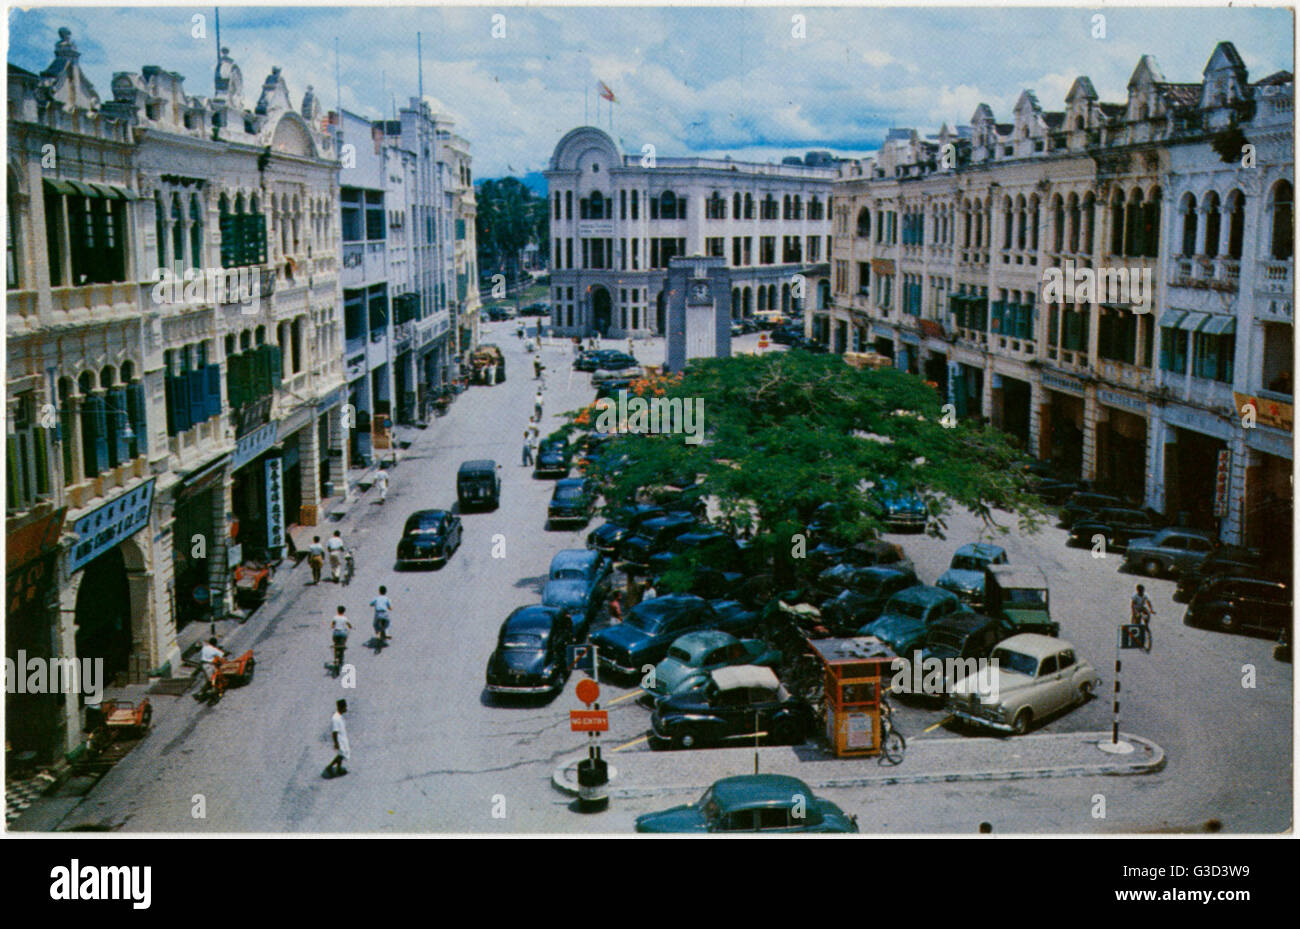 Kuala Lumpur, Malaysia - Market Square Stock Photo